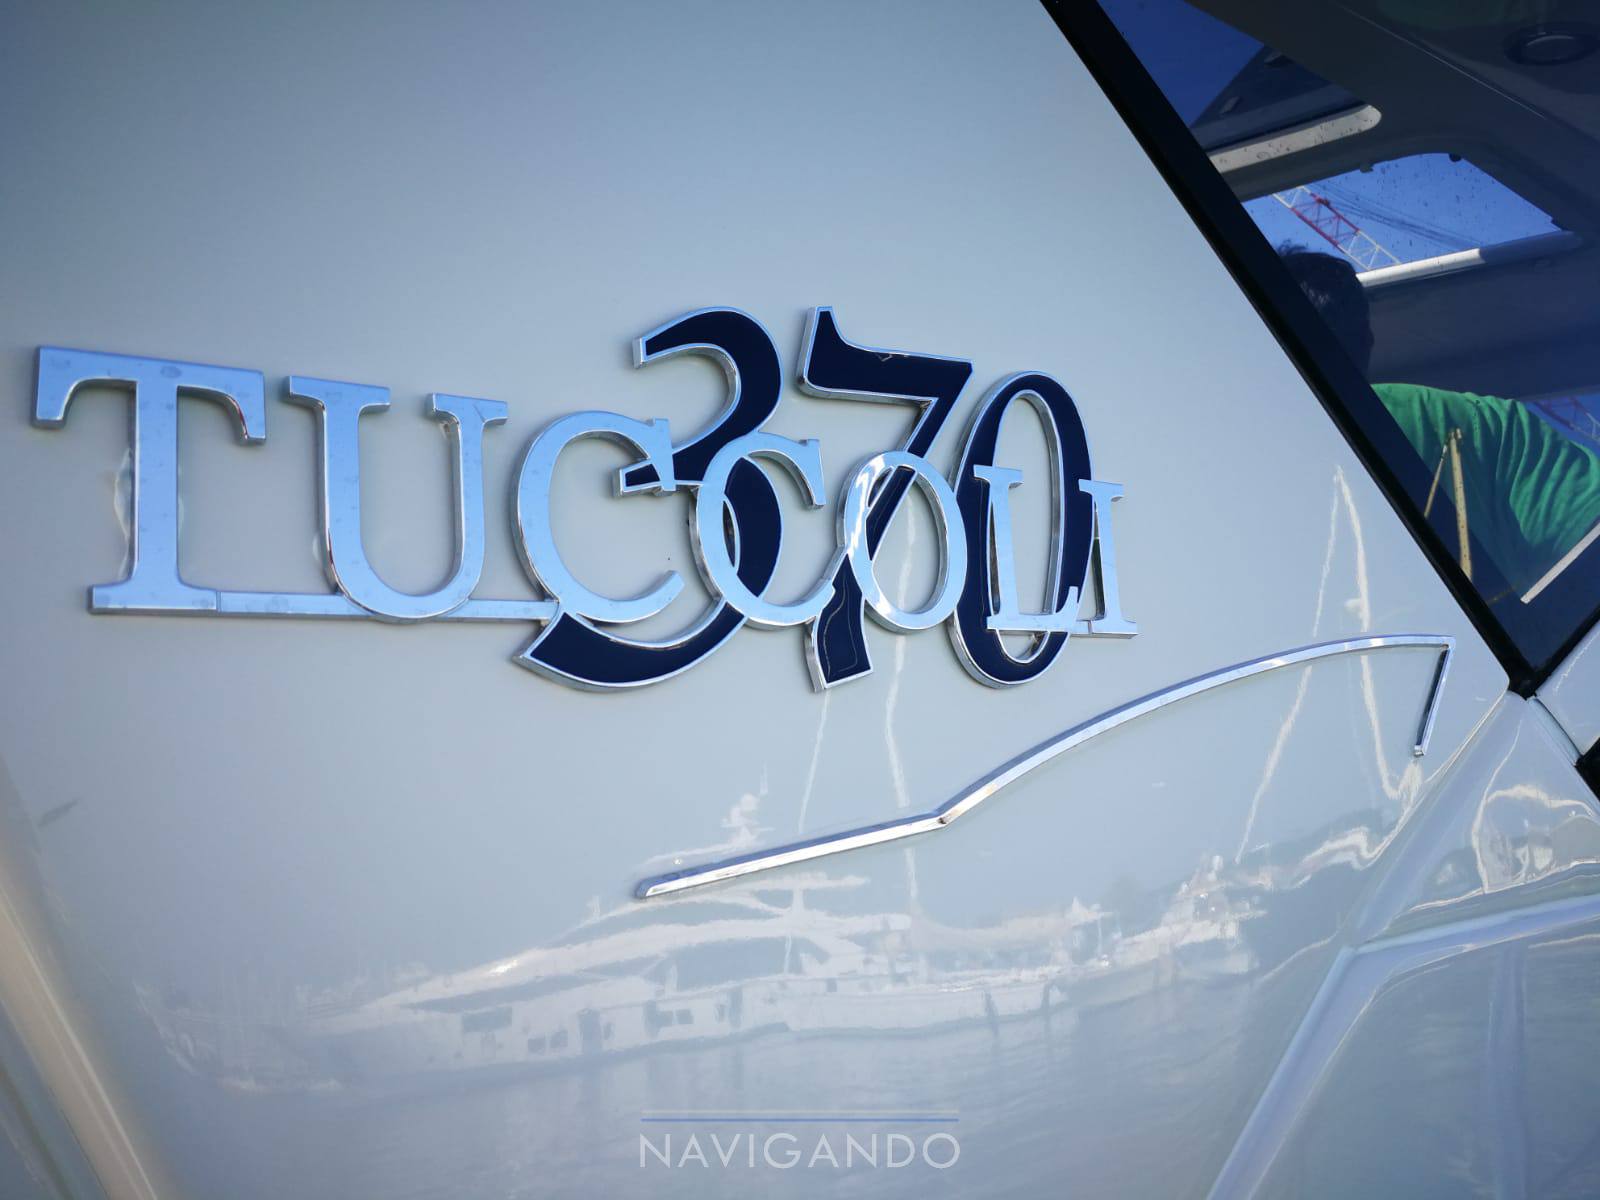 Tuccoli T 370 coupÃ¨ Barca a motore usata in vendita